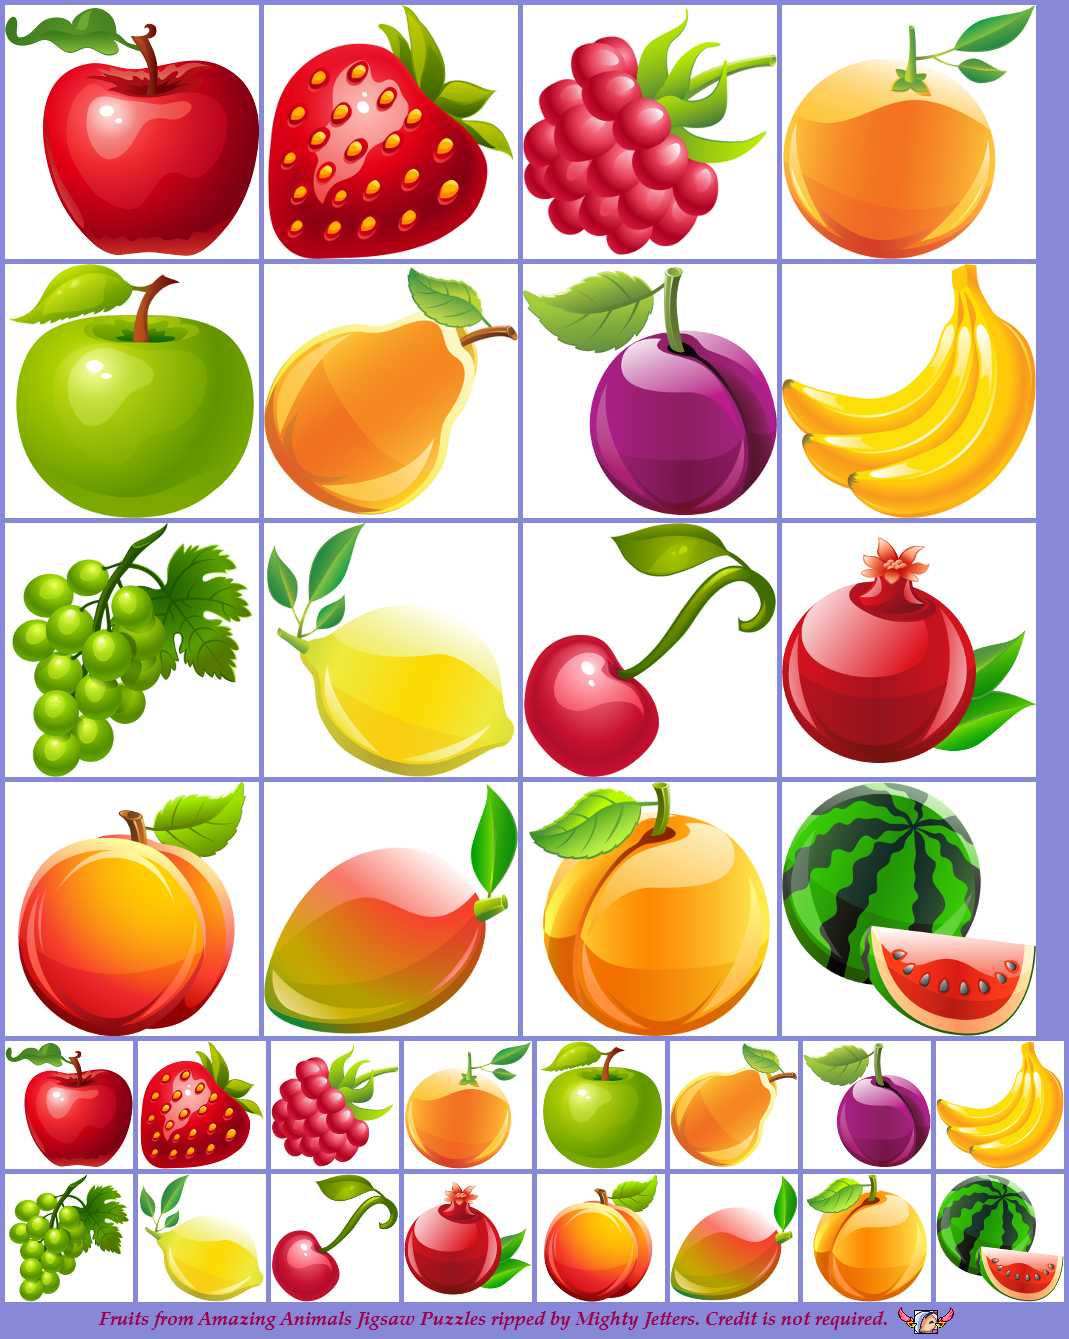 Amazing Animals Jigsaw Puzzles - Fruits